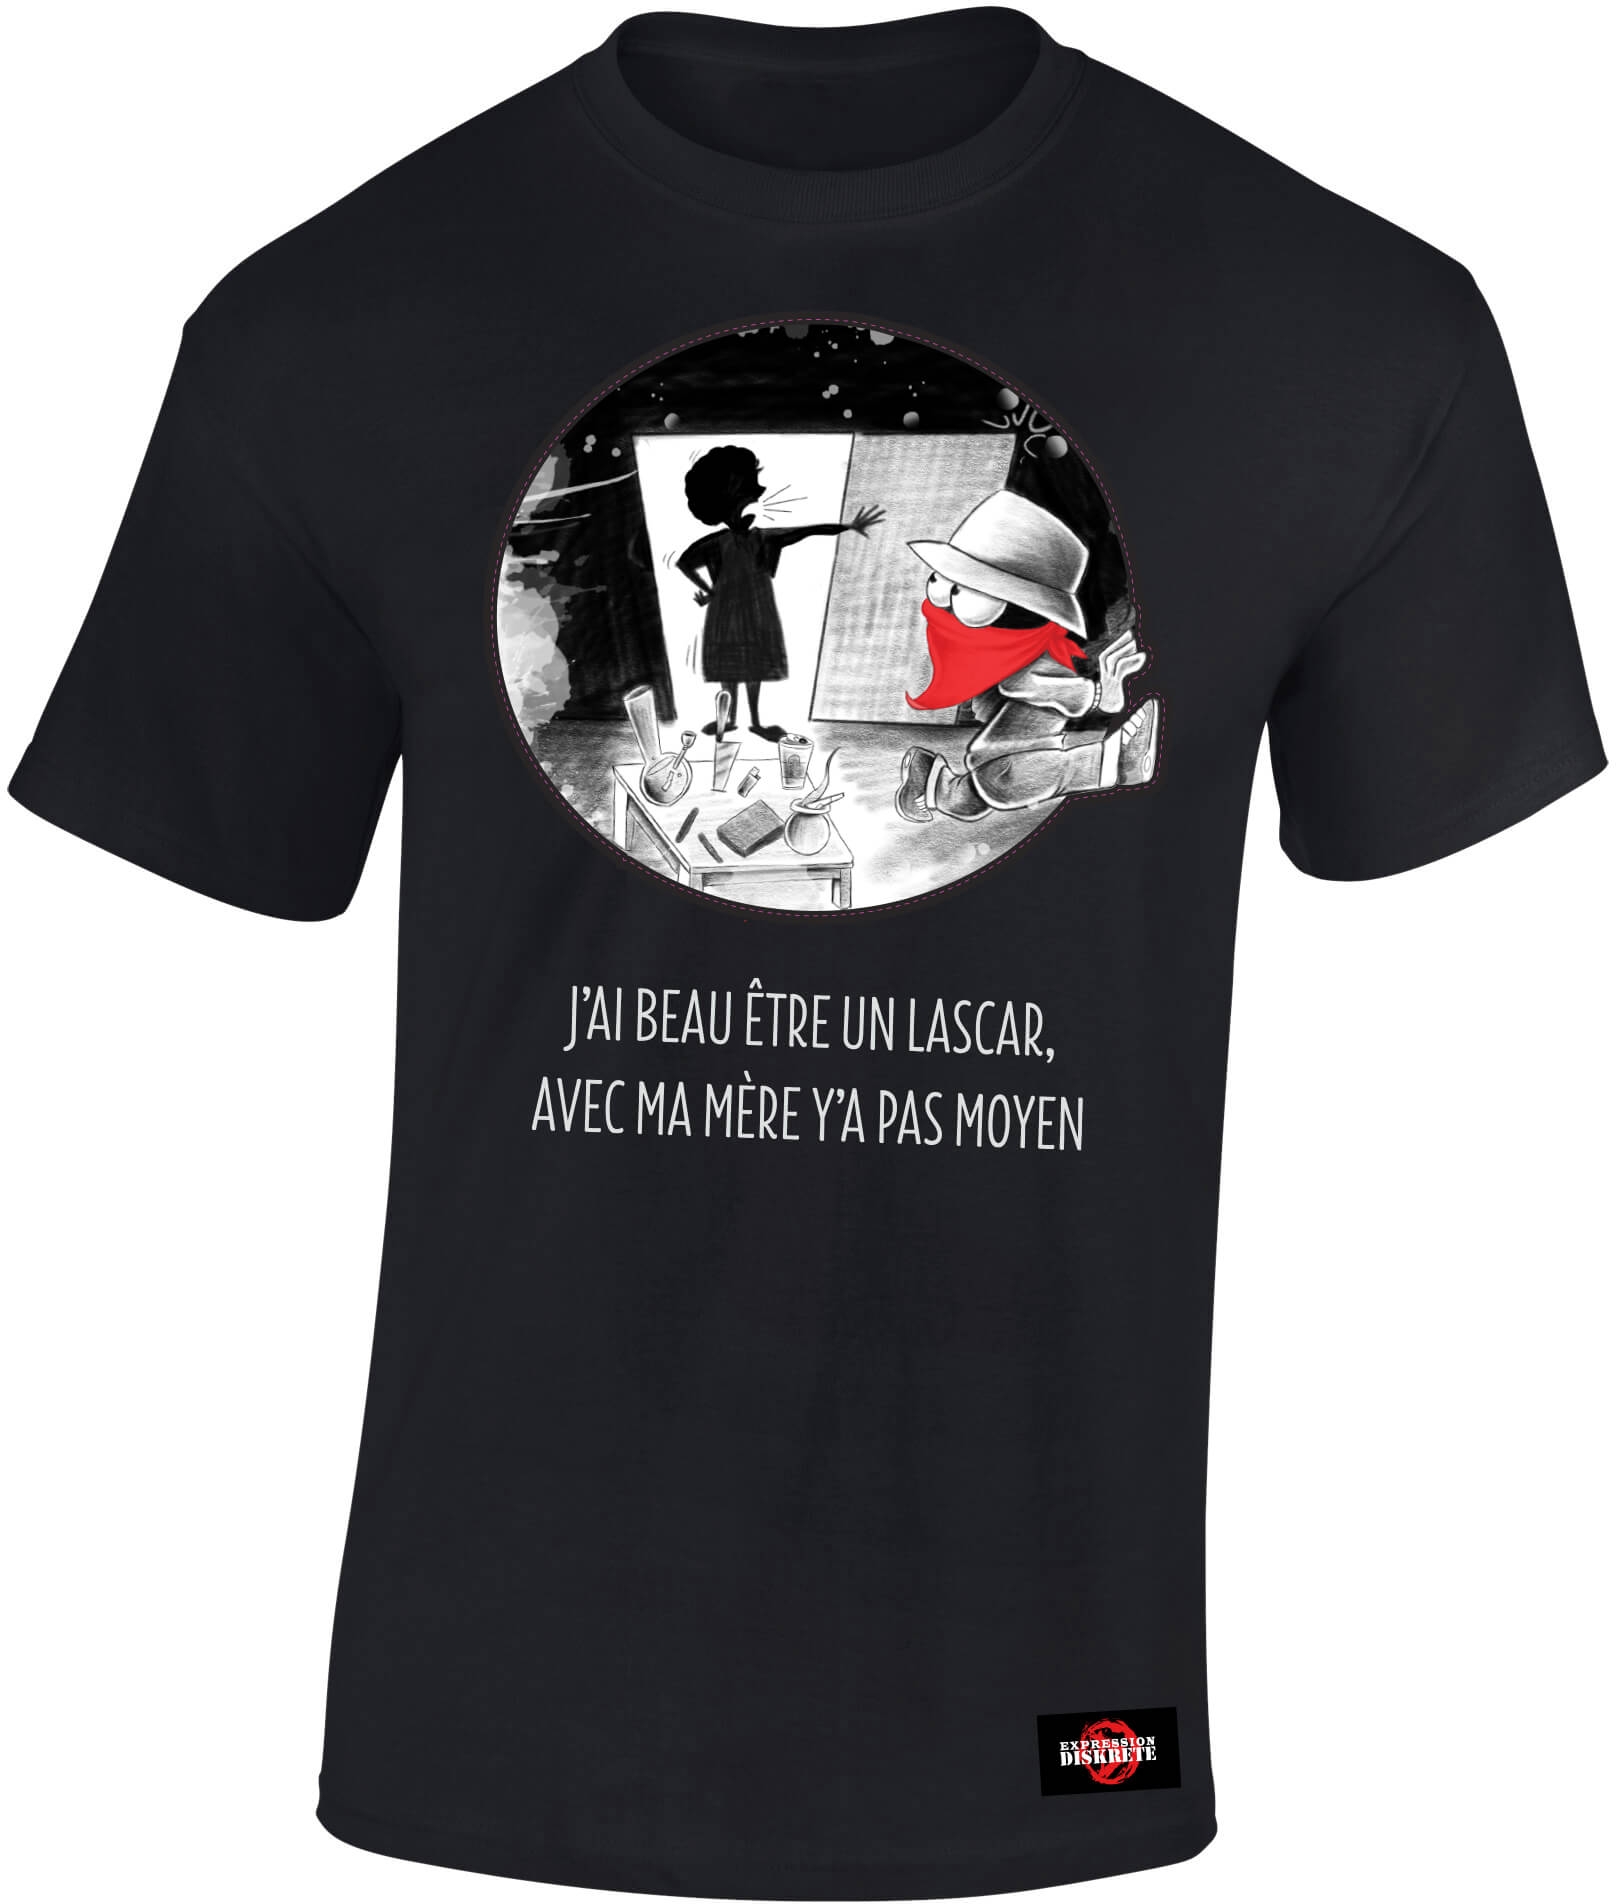 Tshirt Collector "Expression Diskrete" noir de expression direkt sur Scredboutique.com